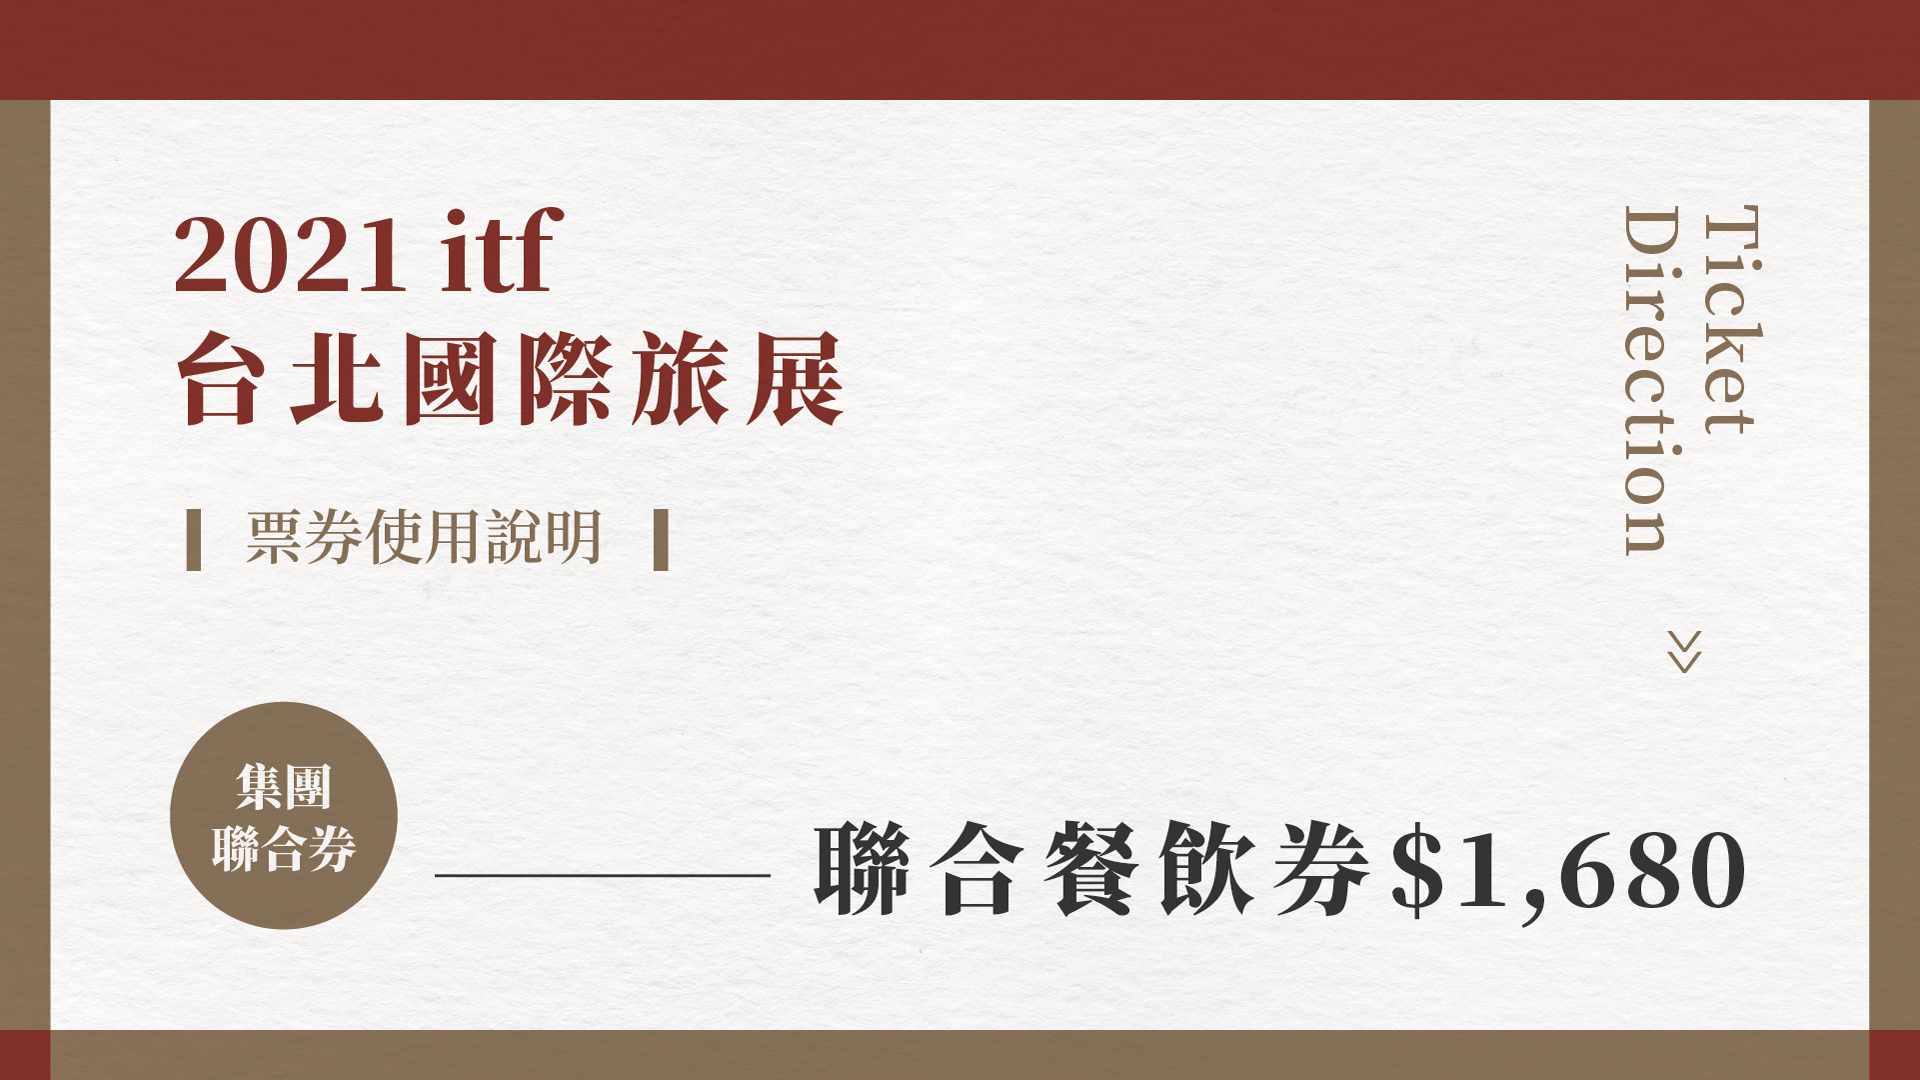 2021 ITF 台北旅展 ❚ 聯合餐飲券使用說明